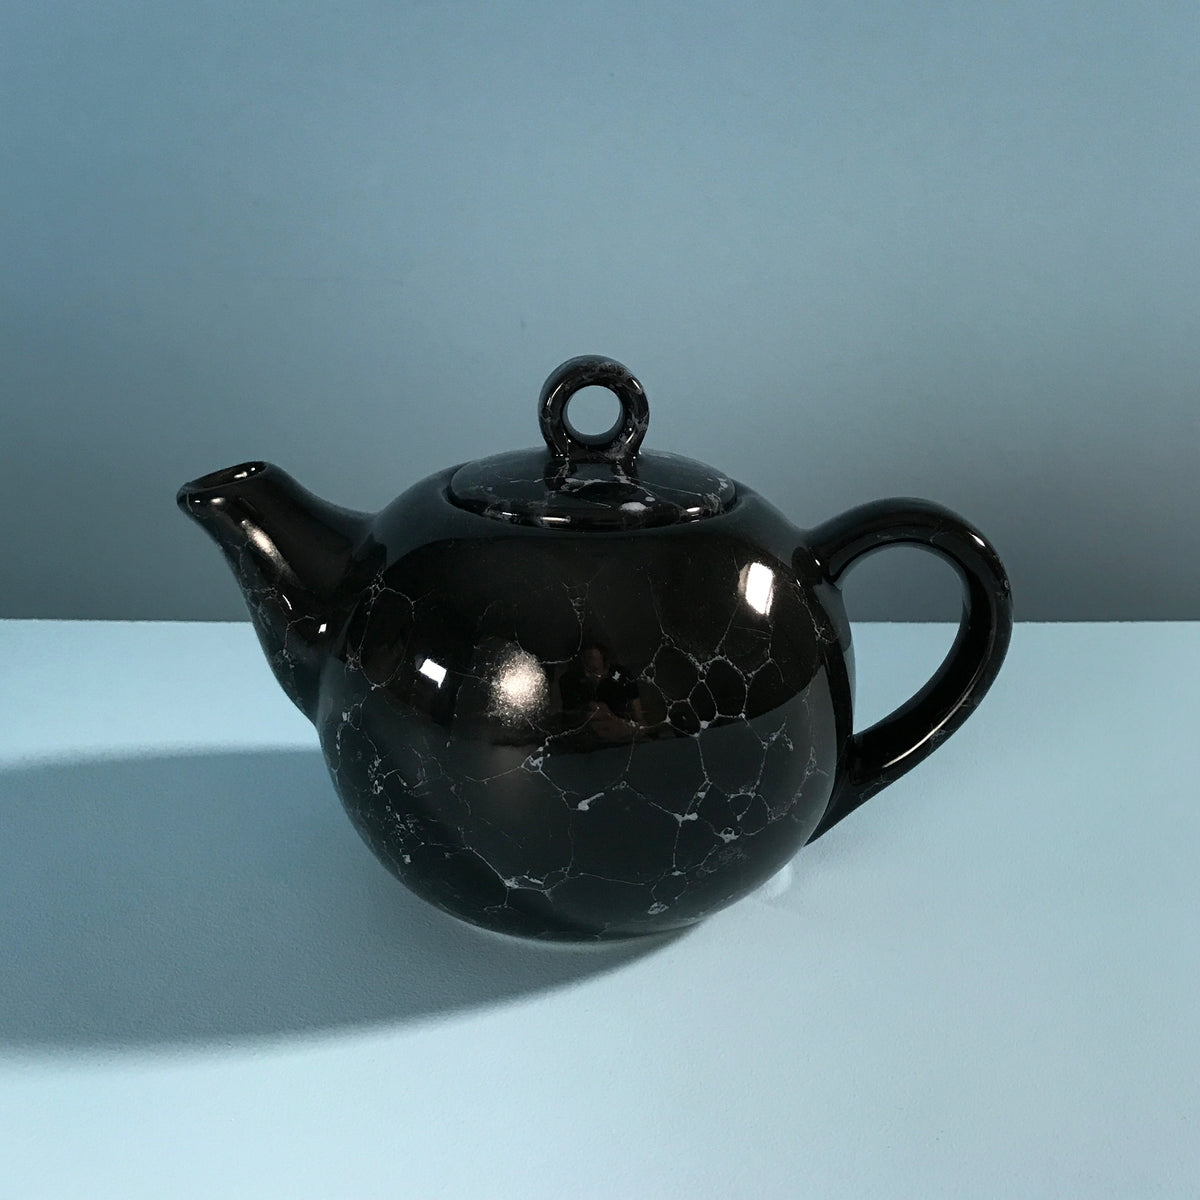 Sears Vintage Teapots